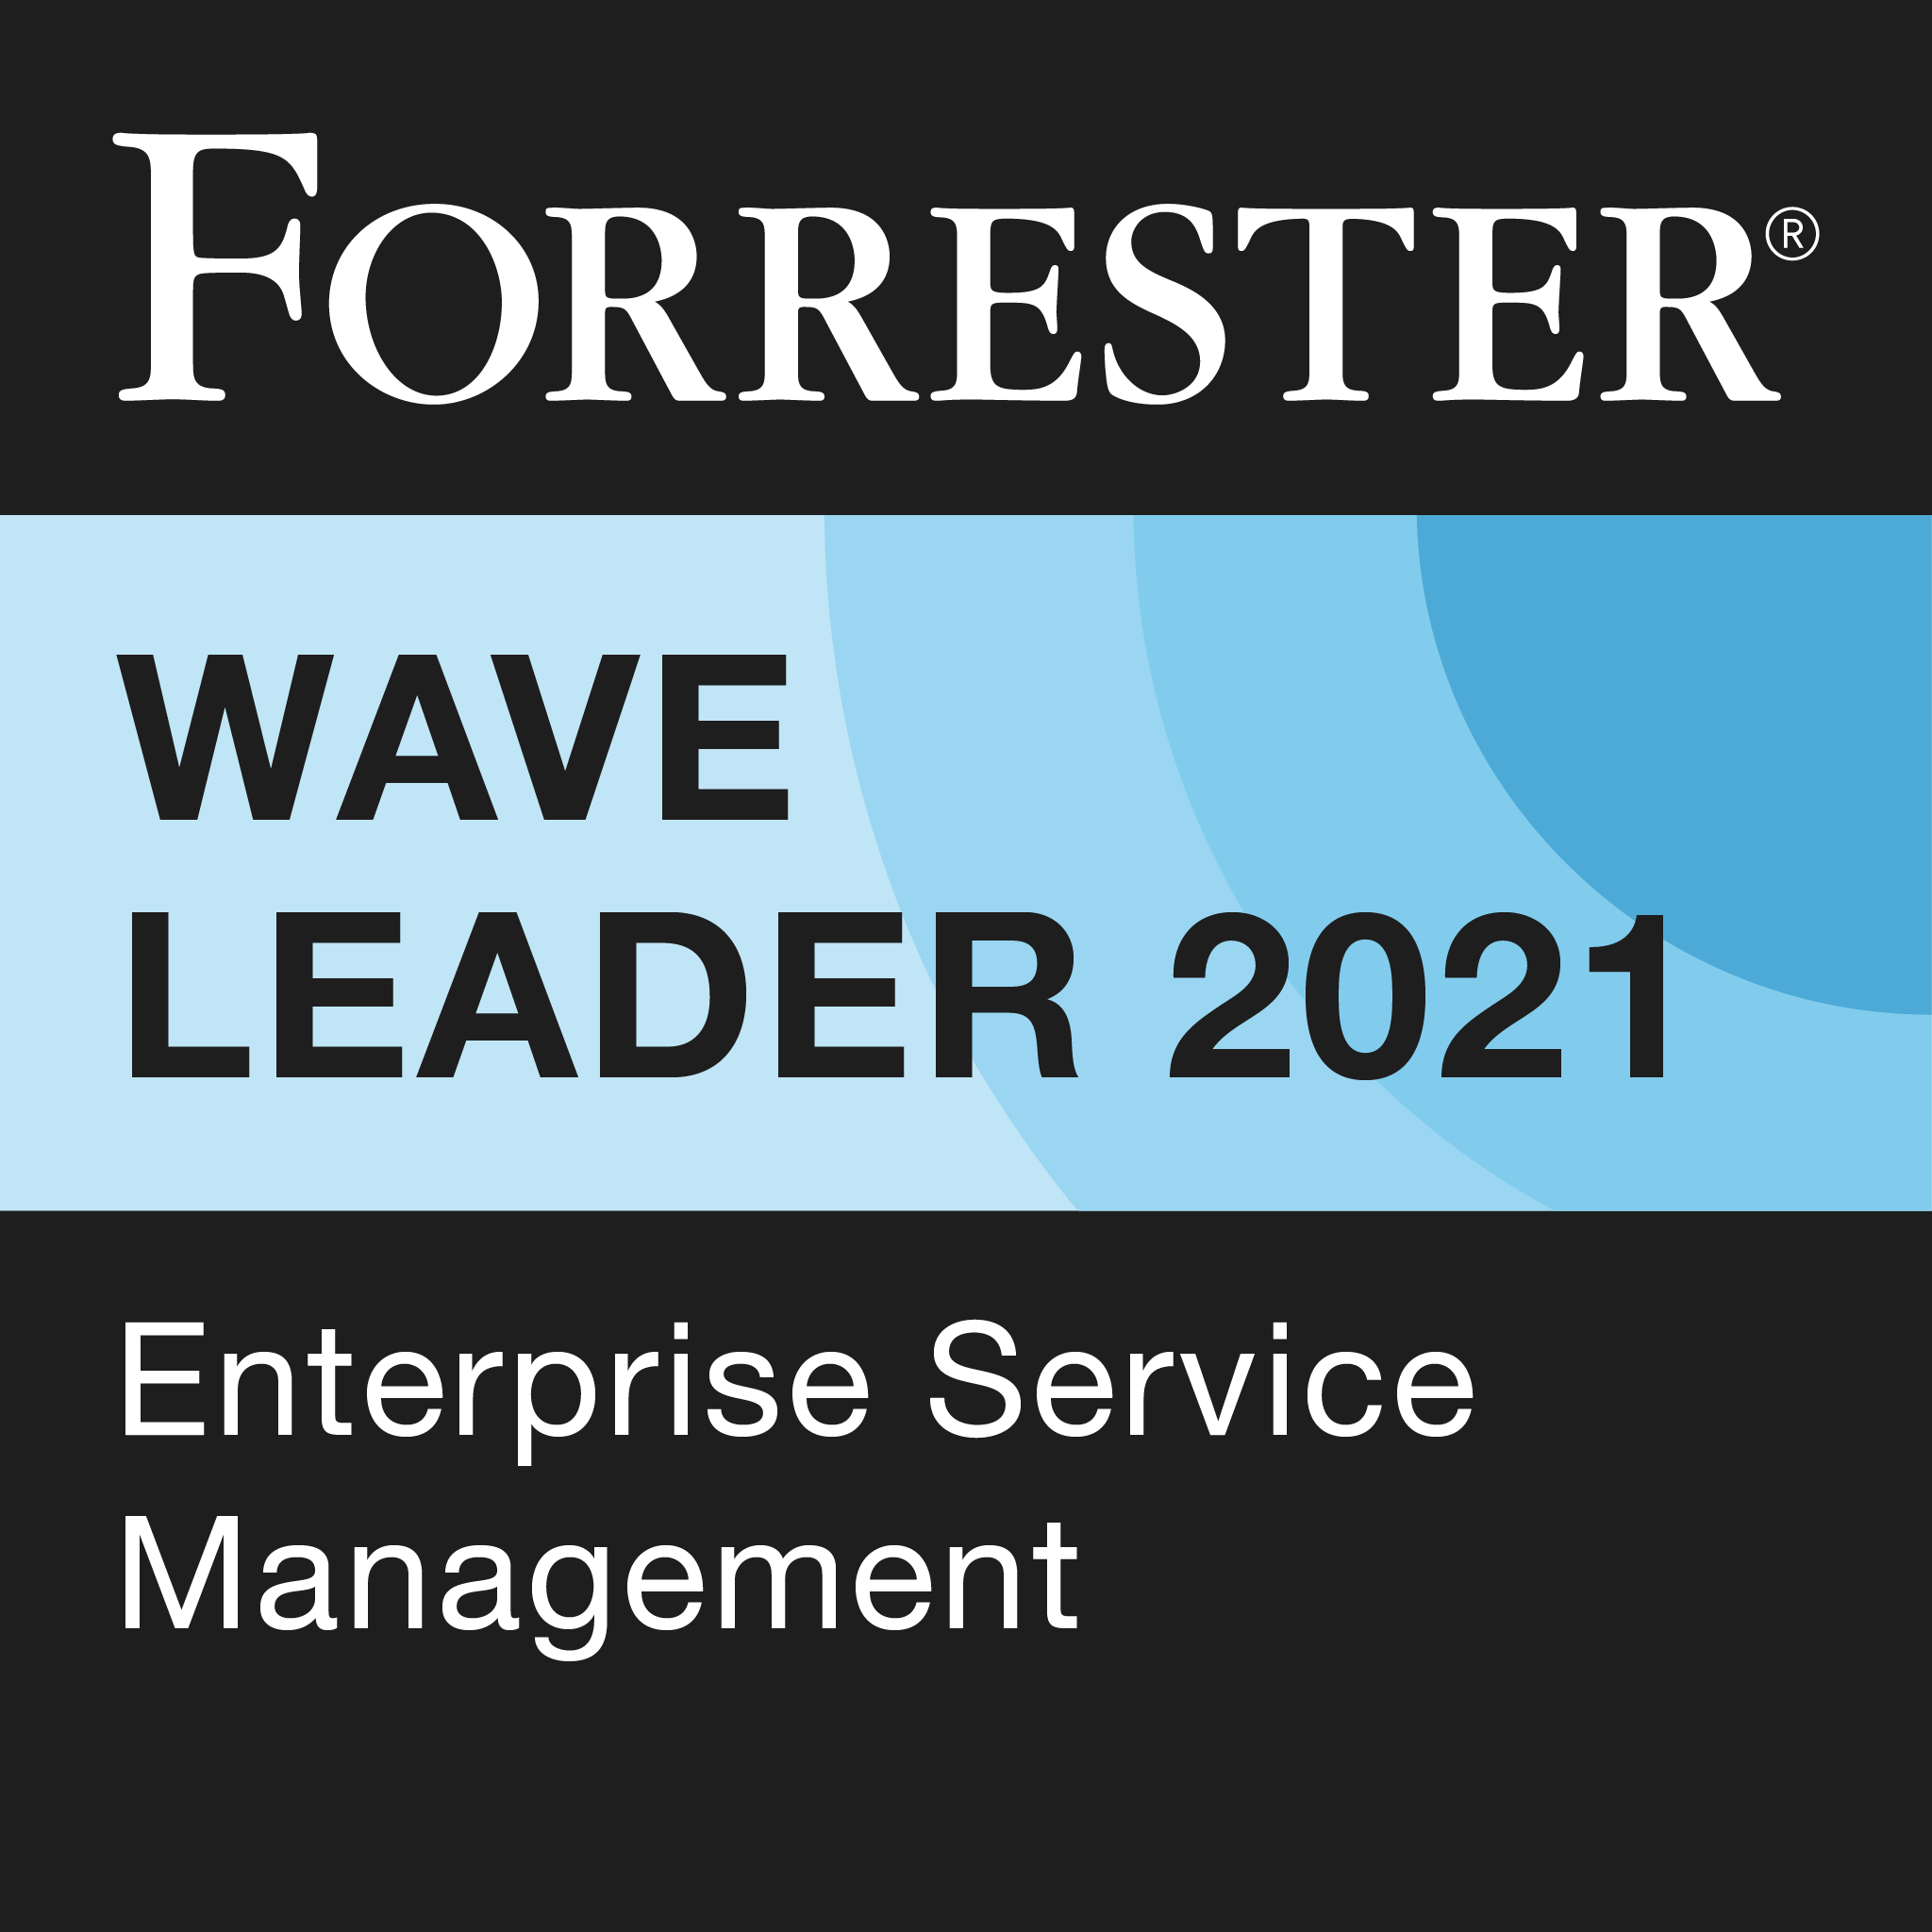 Líder en la Forrester Wave en gestión de servicios empresariales de 2021